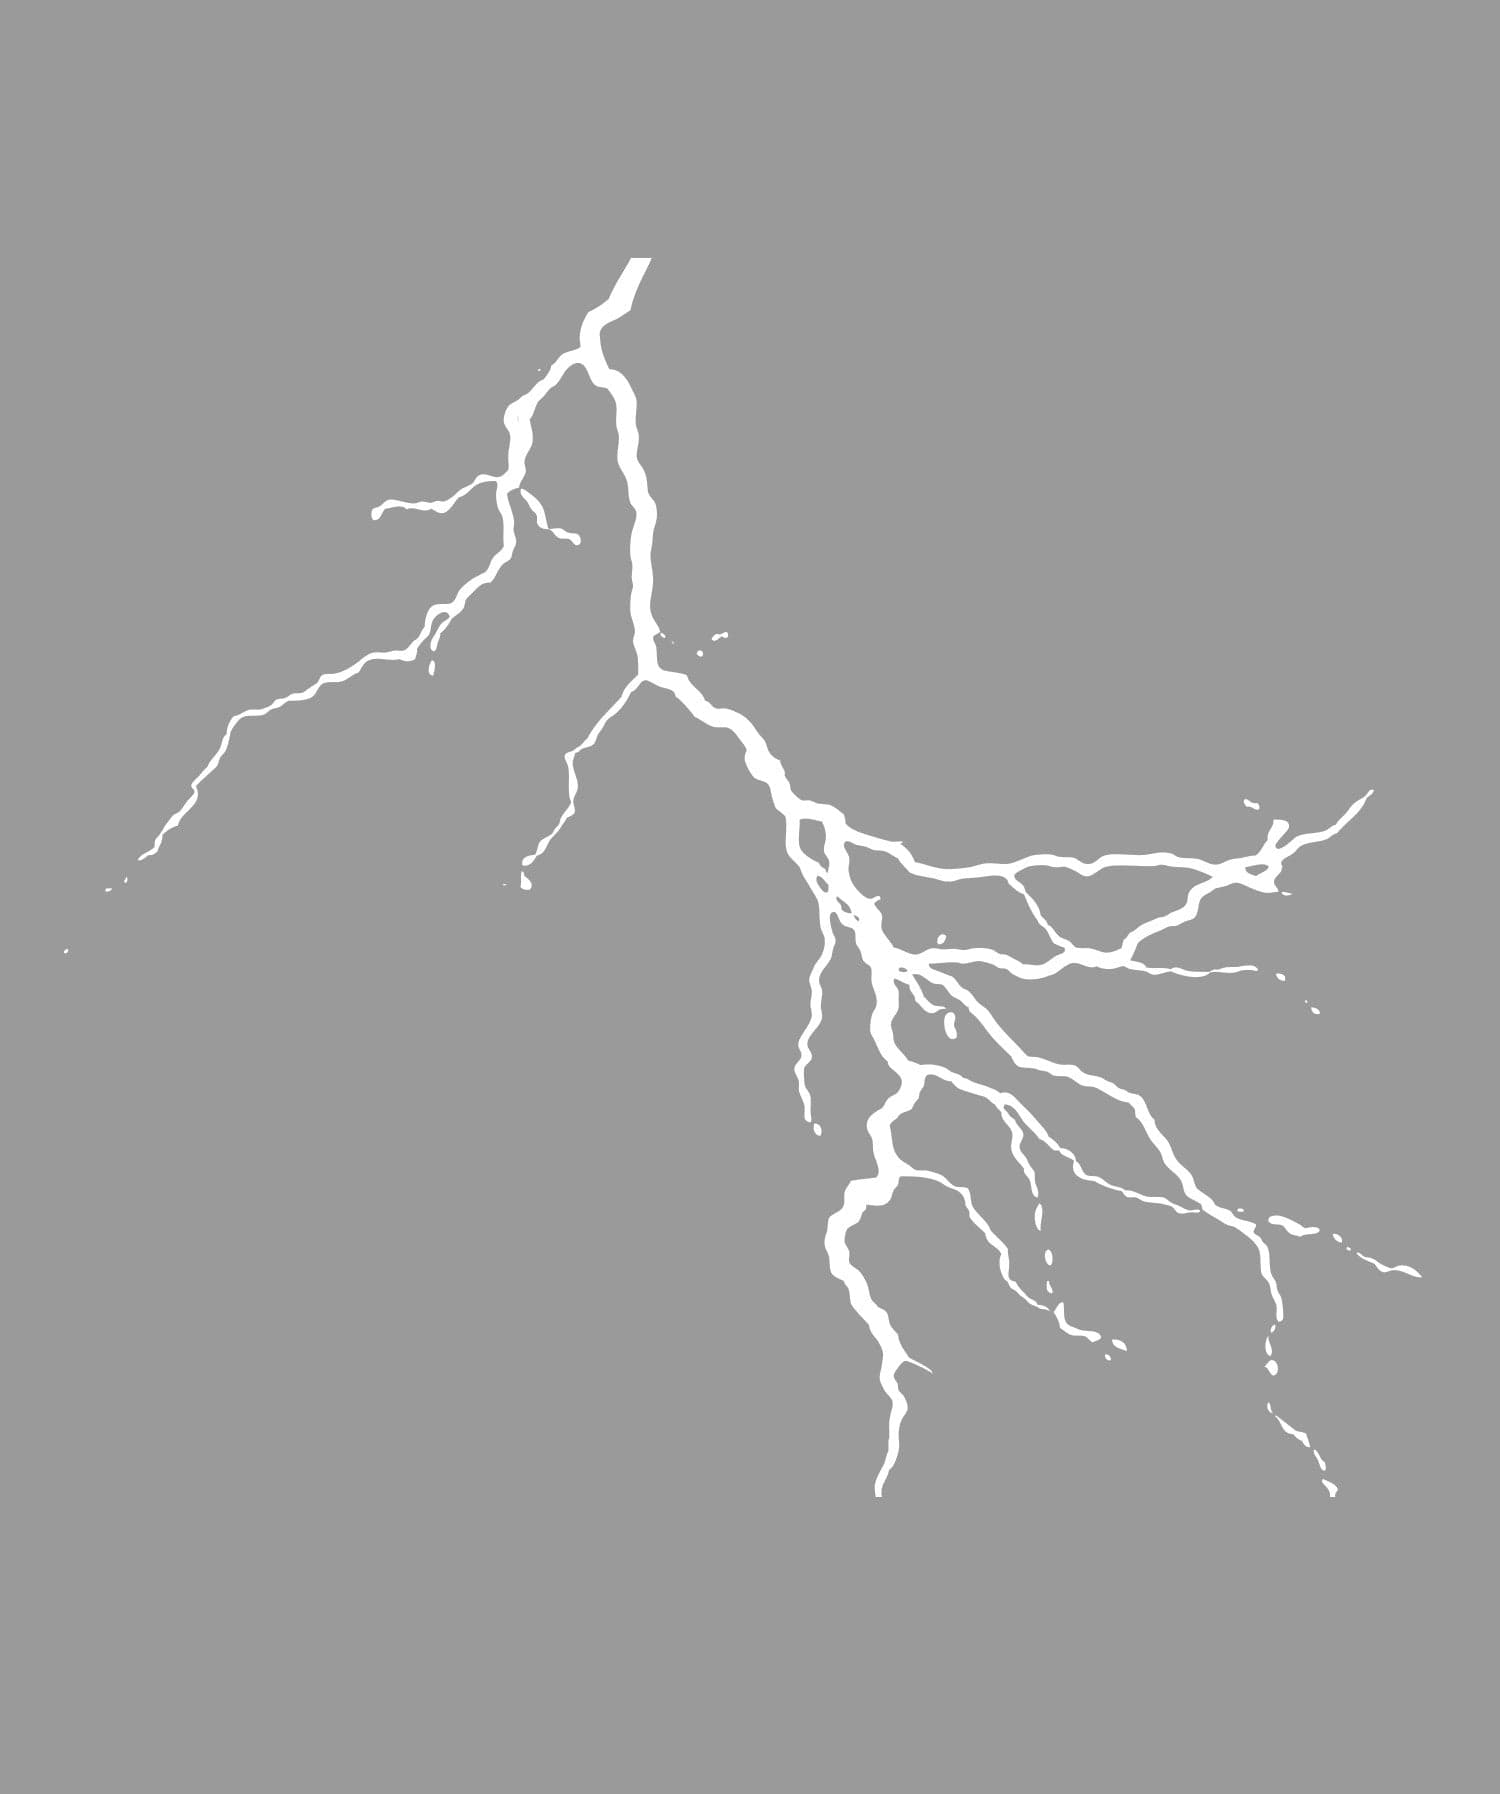  Lightning Bolt NOK Decal Vinyl Sticker